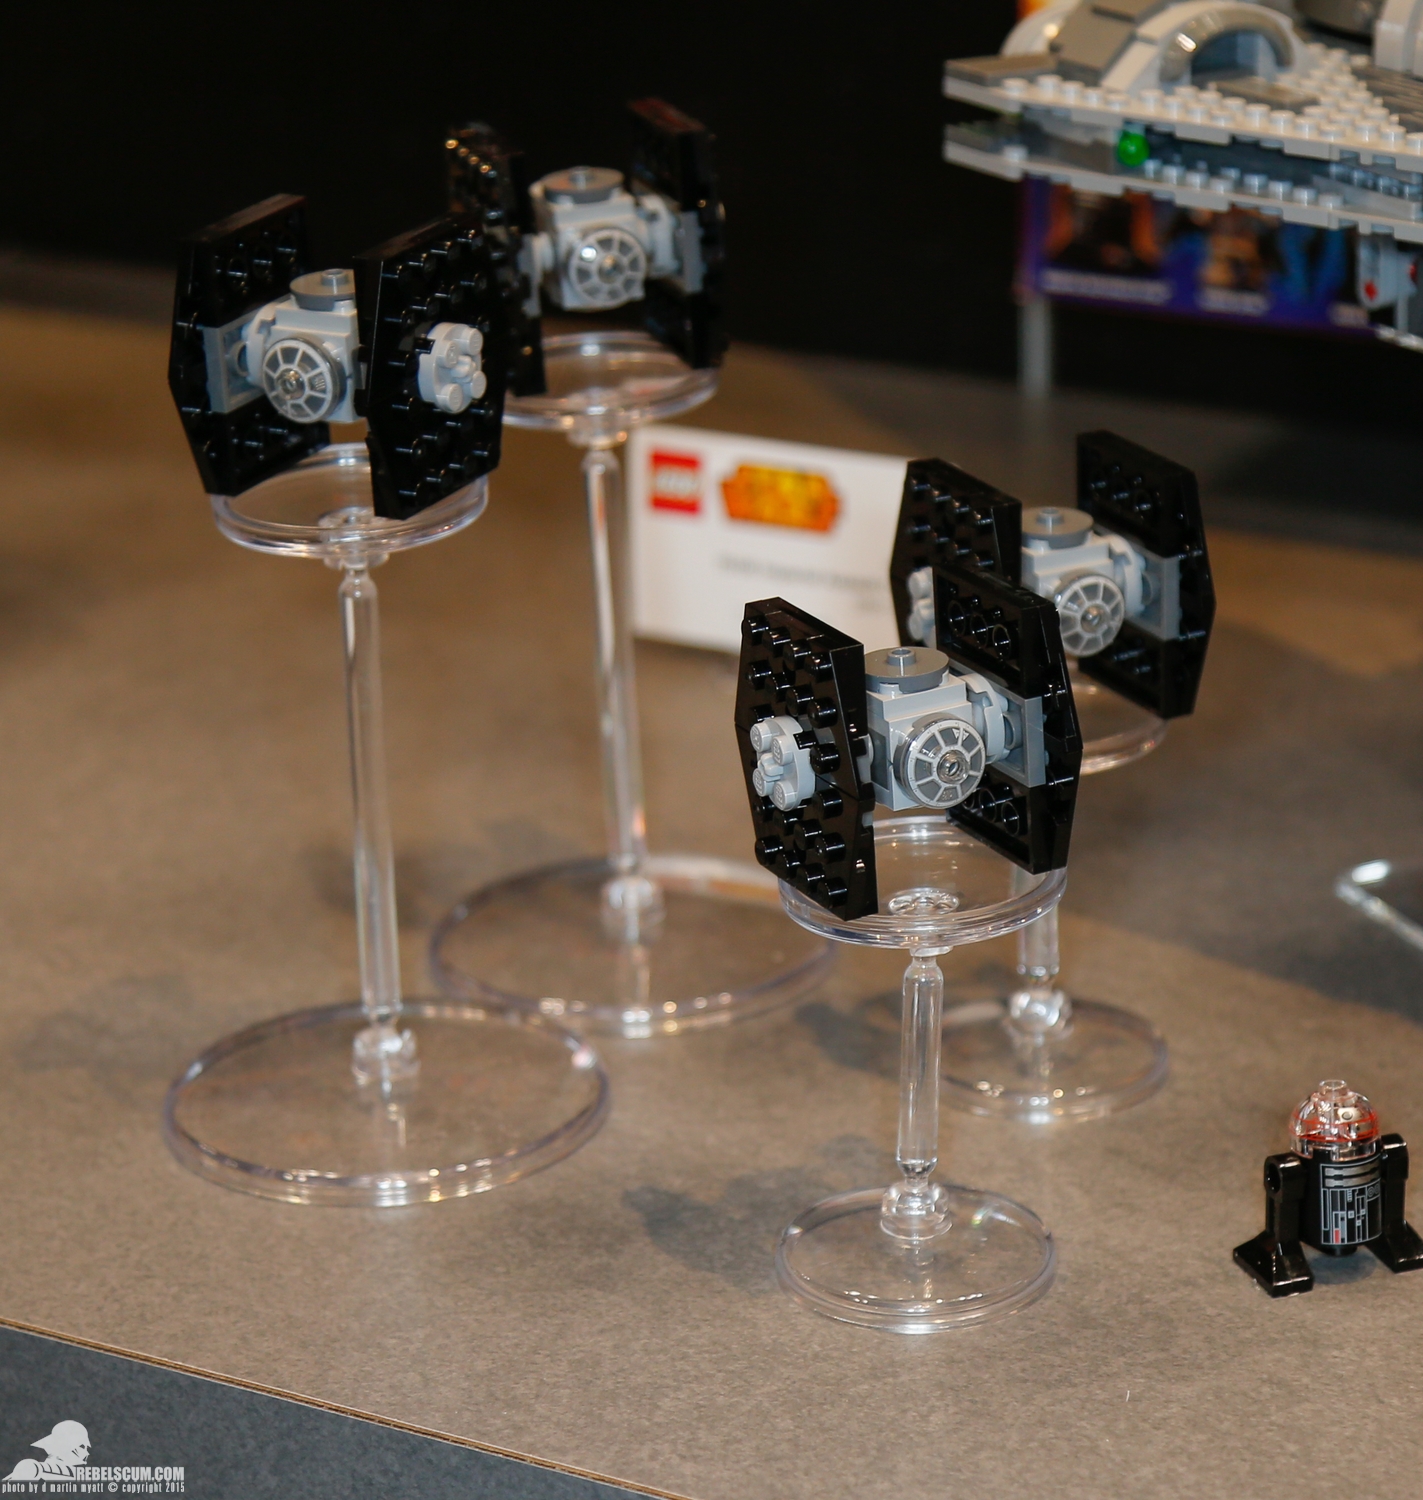 2015-International-Toy-Fair-Star-Wars-Lego-106.jpg